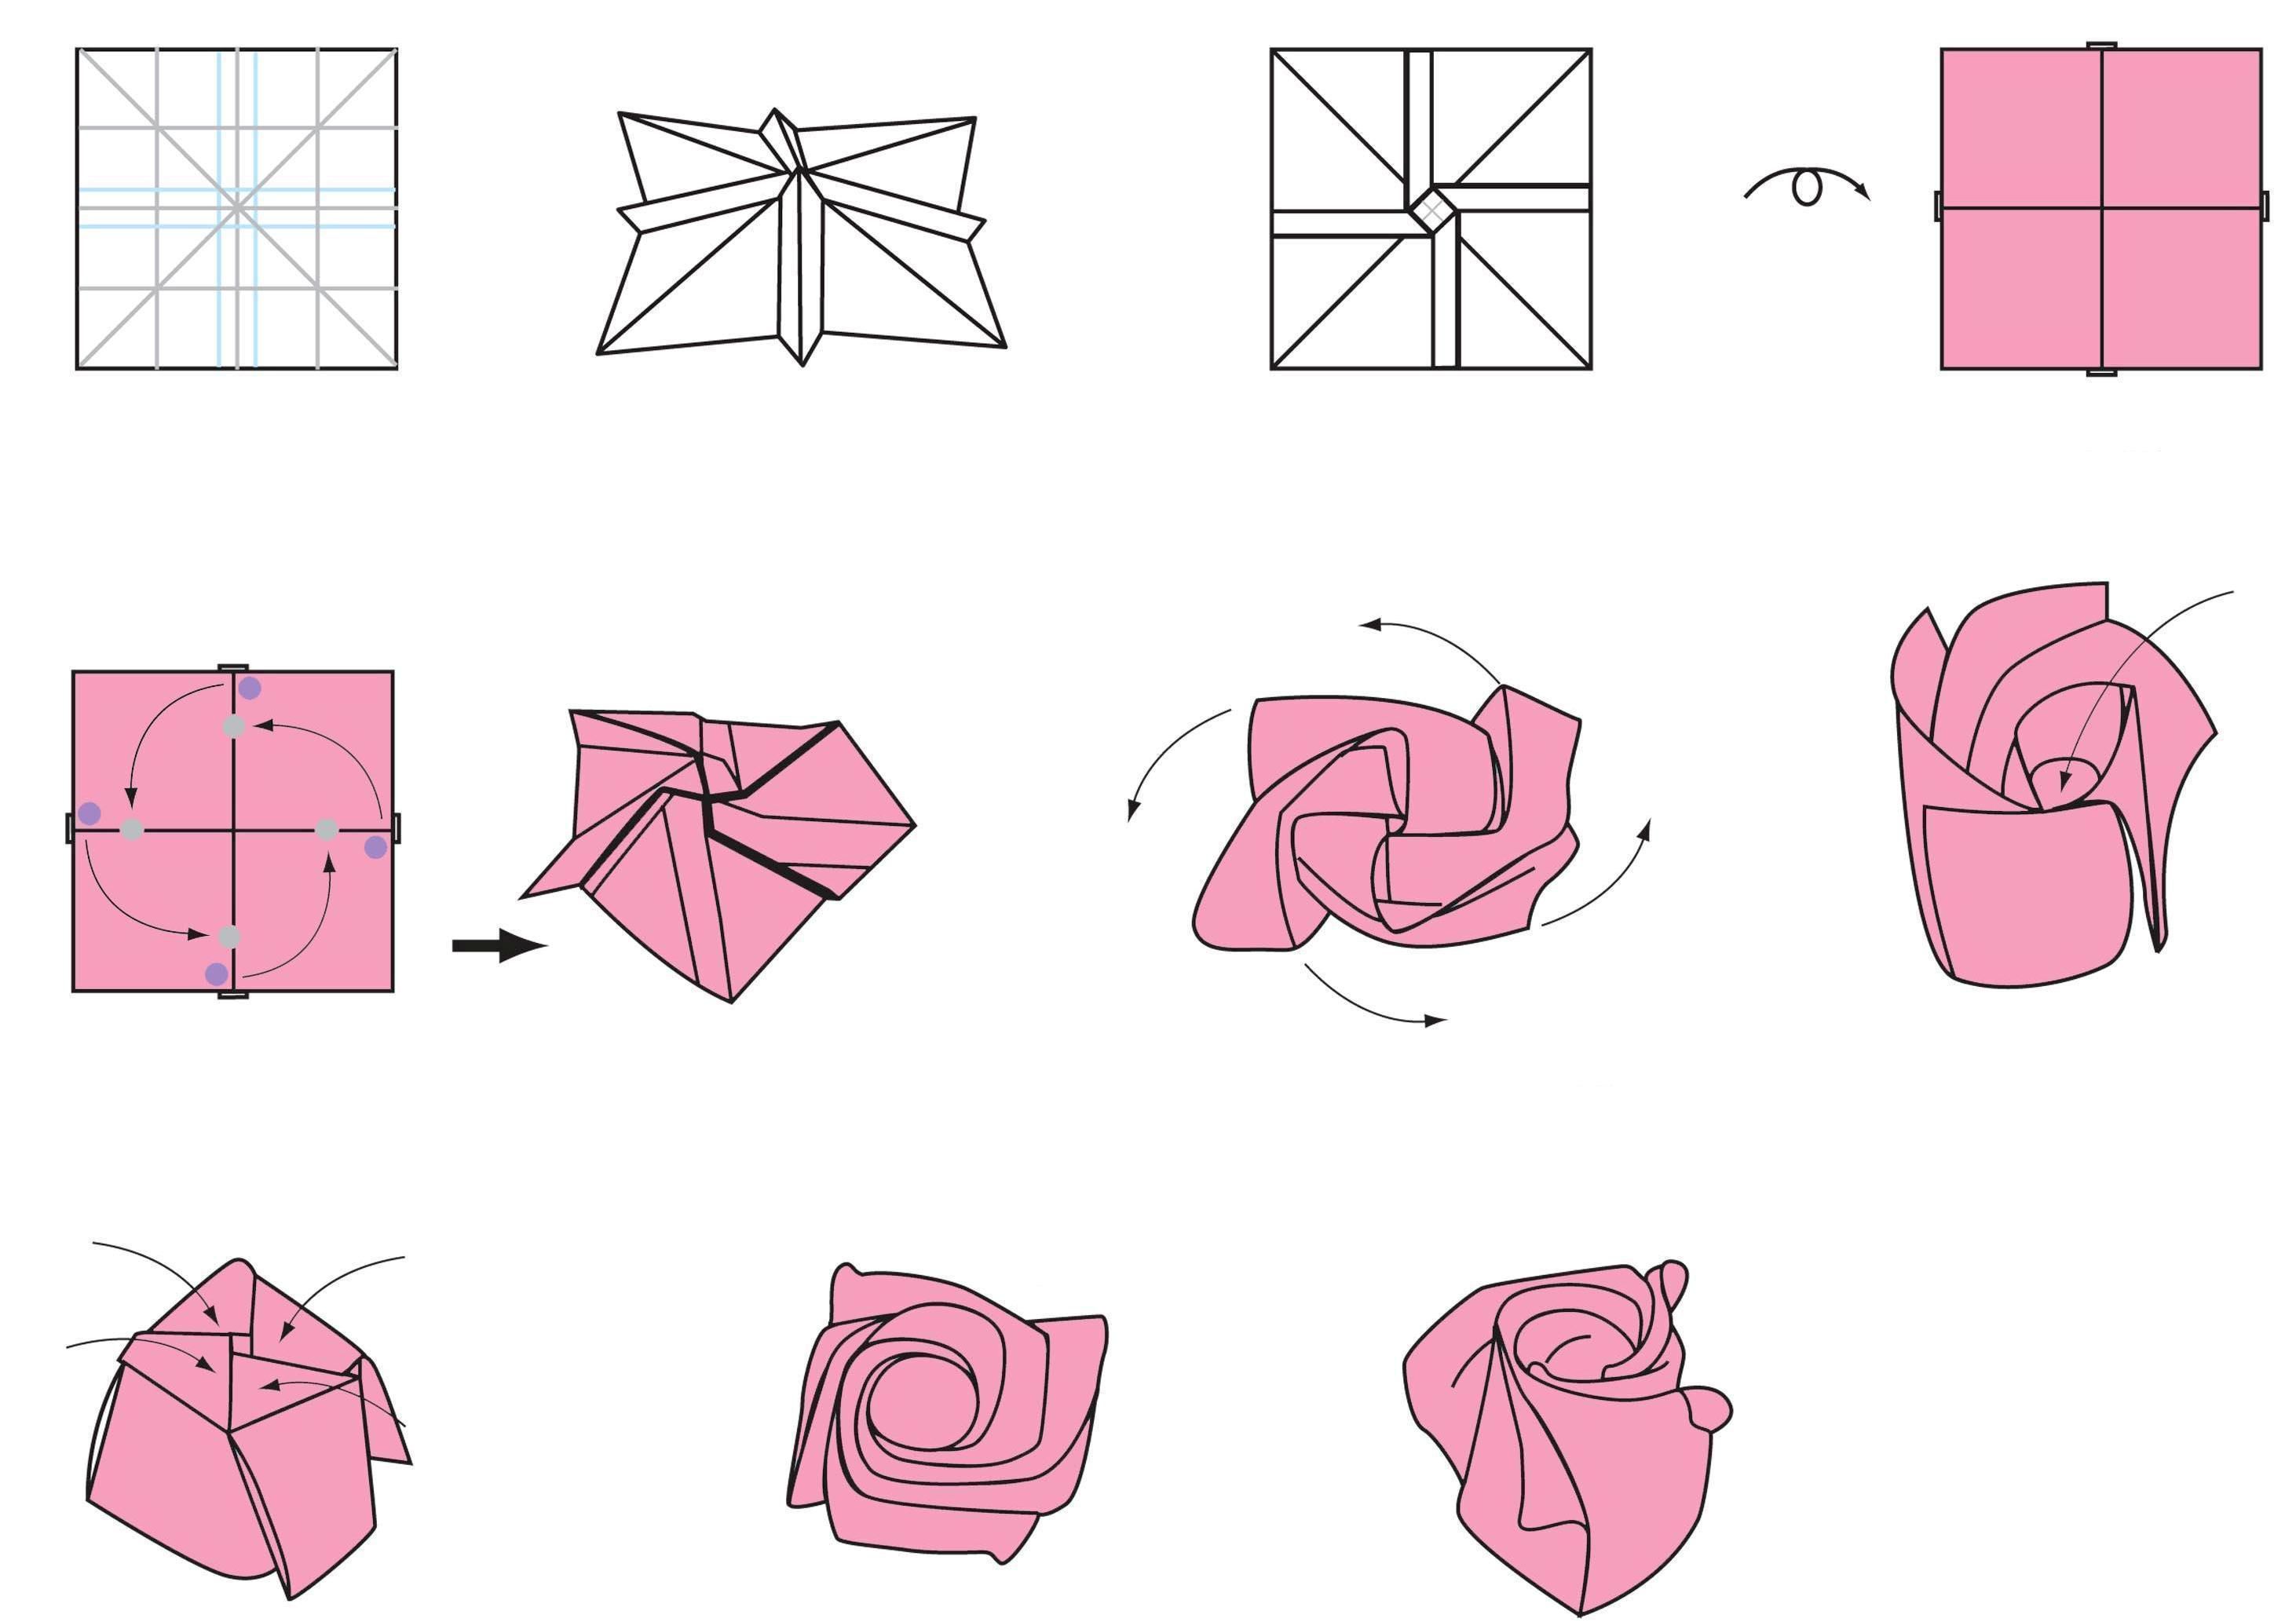 Цветок оригами - фото онлайн на биржевые-записки.рф